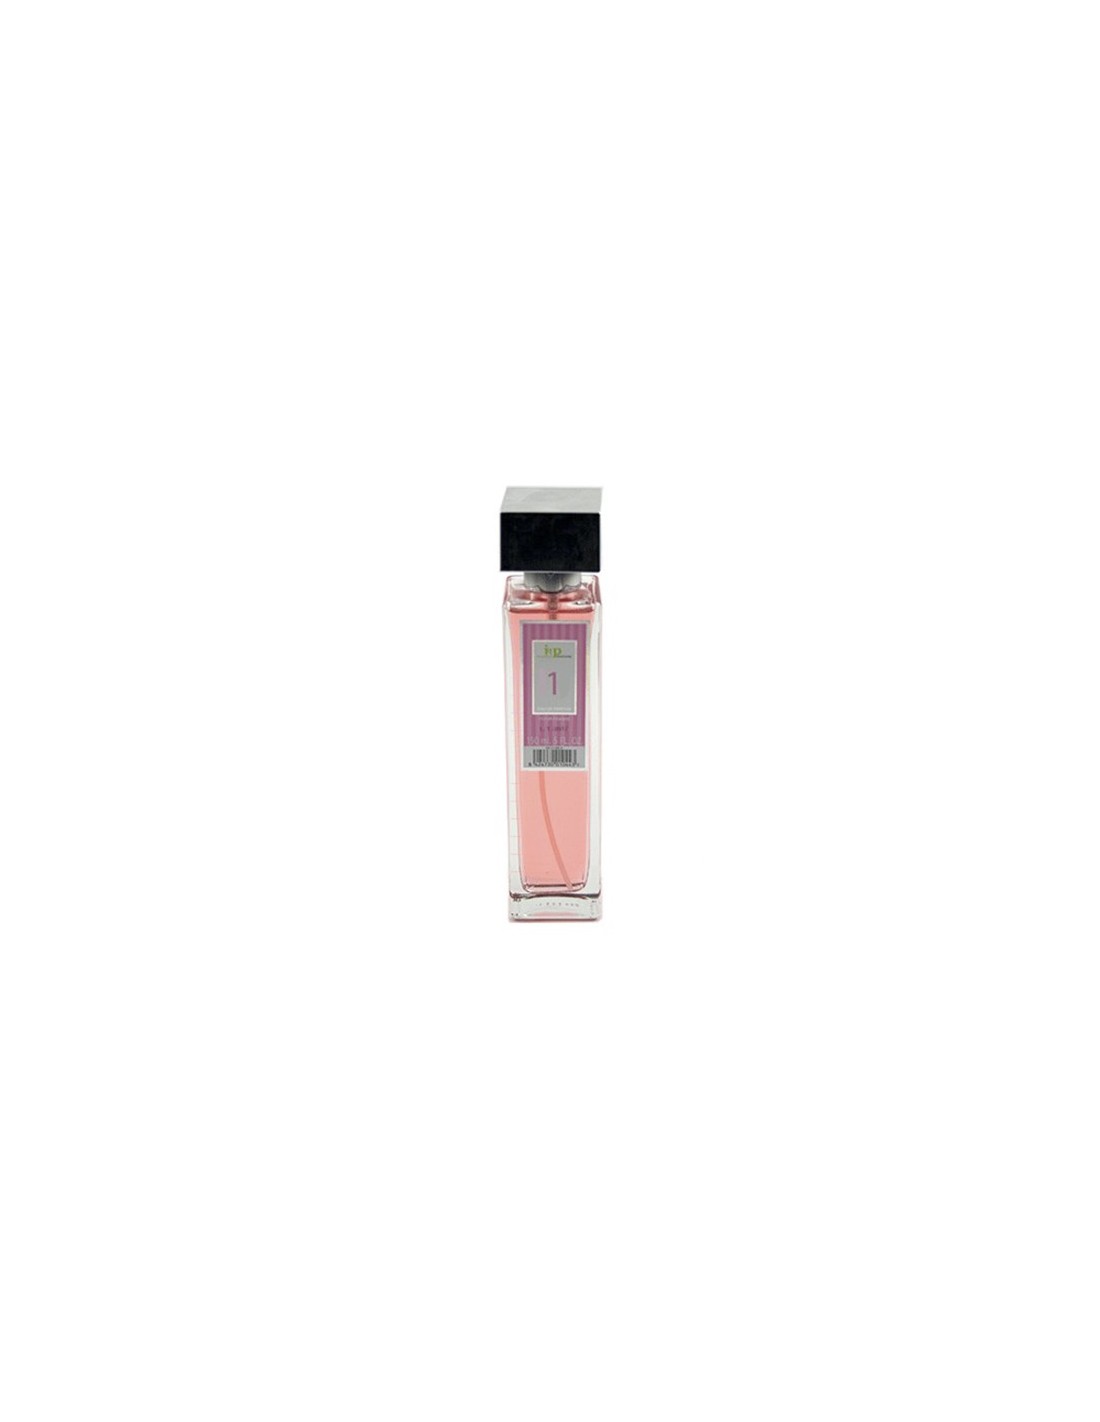 IAP Perfume Mujer N1 150ml